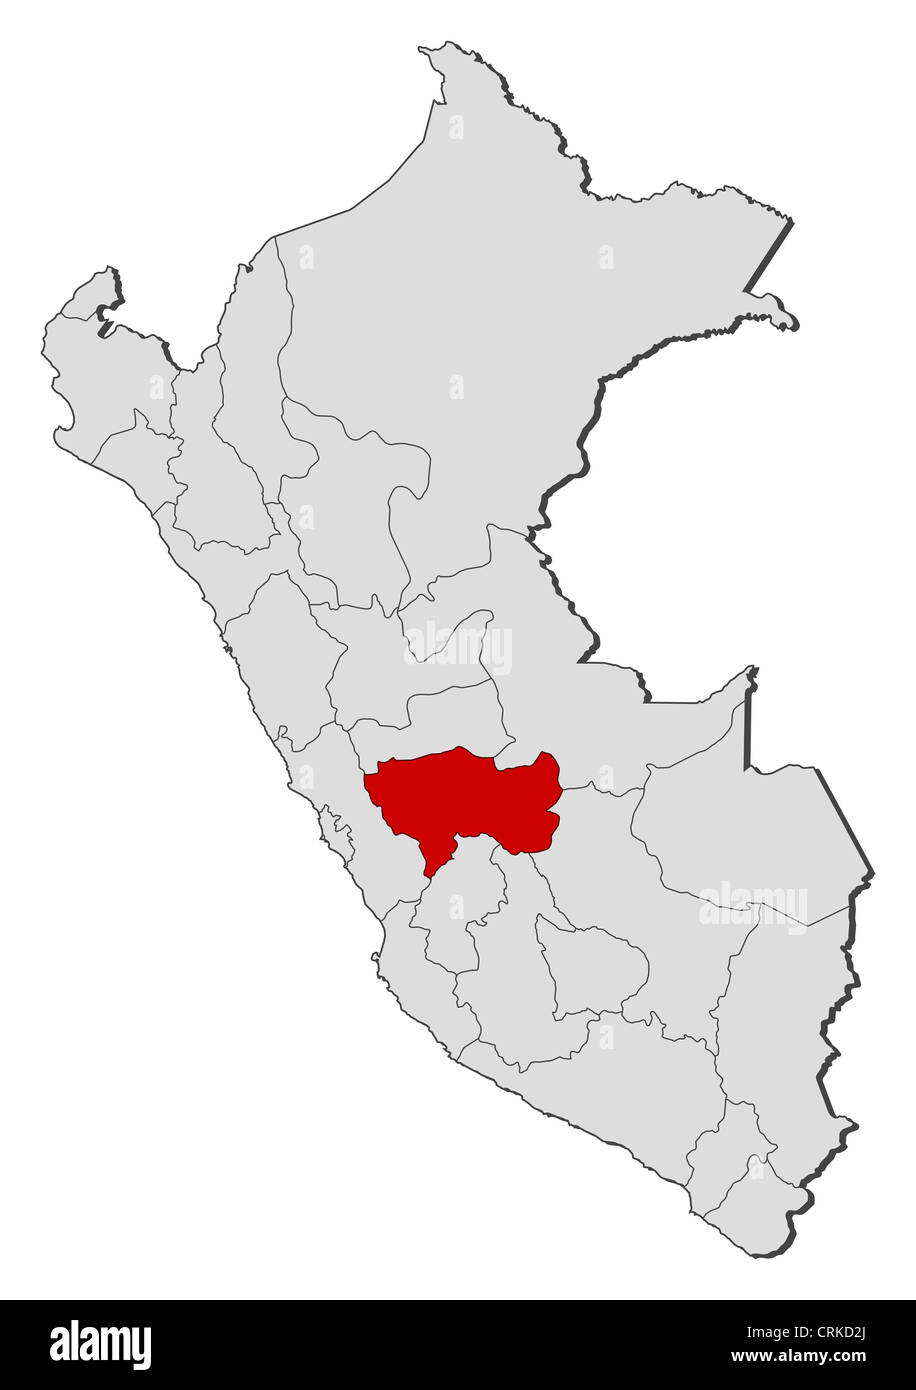 Mapa Político De Perú Con Las Varias Regiones Donde Se Resalta De Junín